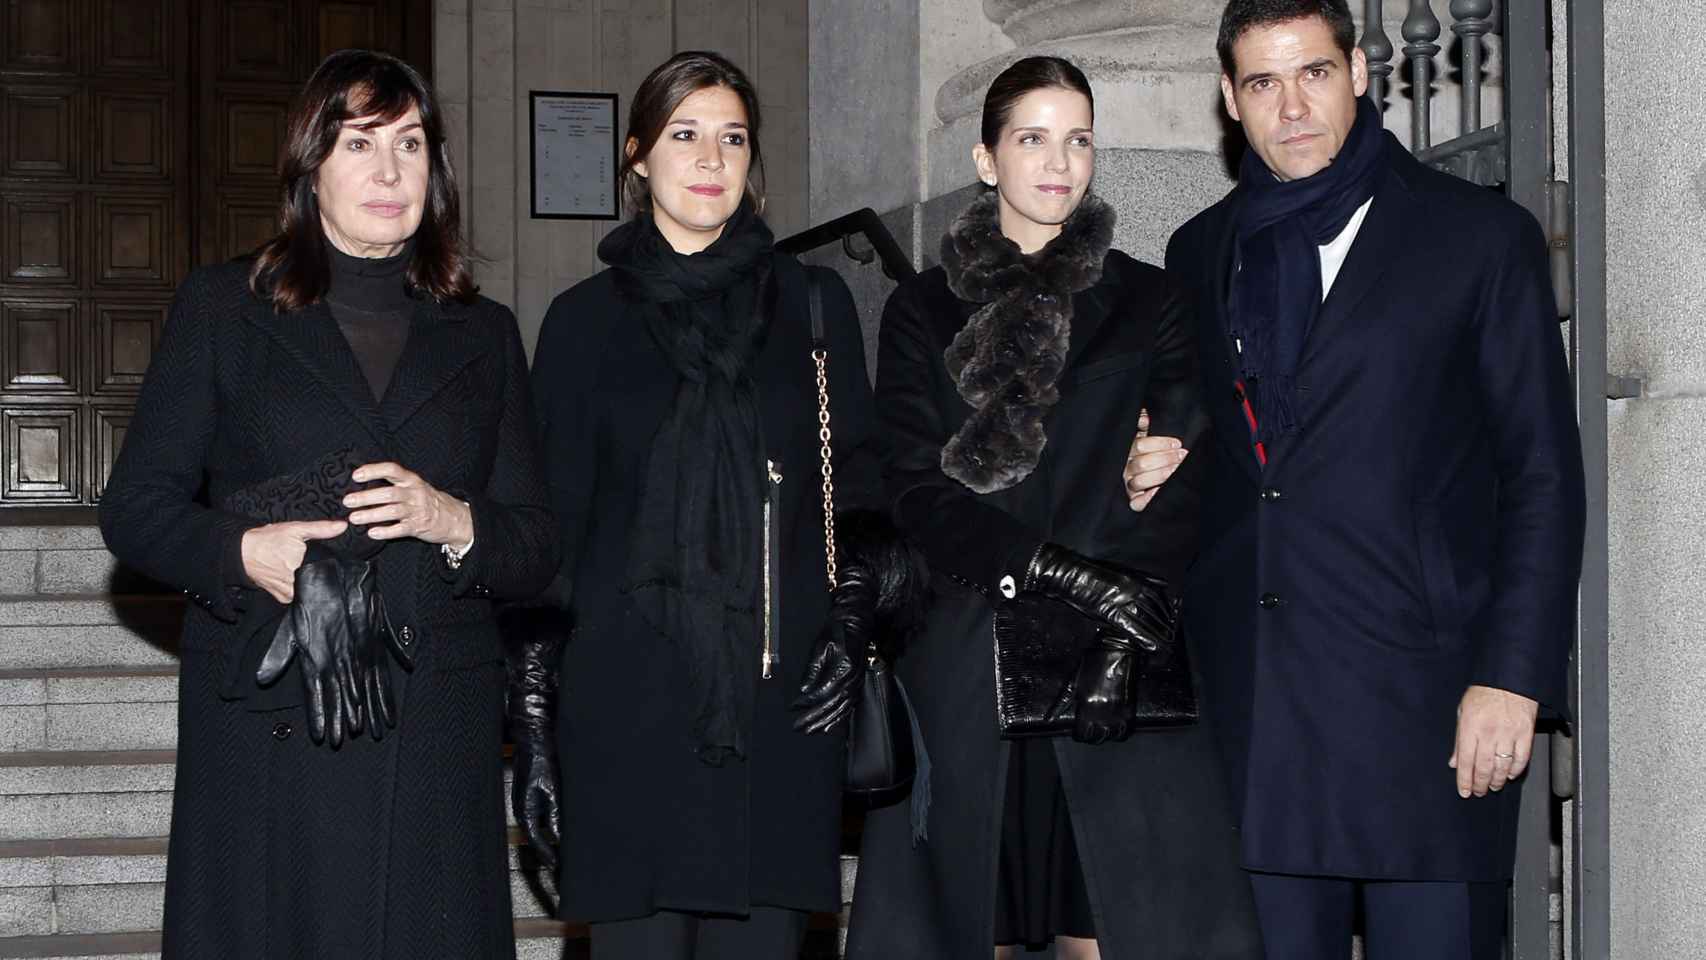 Carmen Martínez Bordiú , Cynthia Rossi, Margarita Vargas y Luis Alfonso de Borbón durante el funeral de Carmen Franco en Madrid.